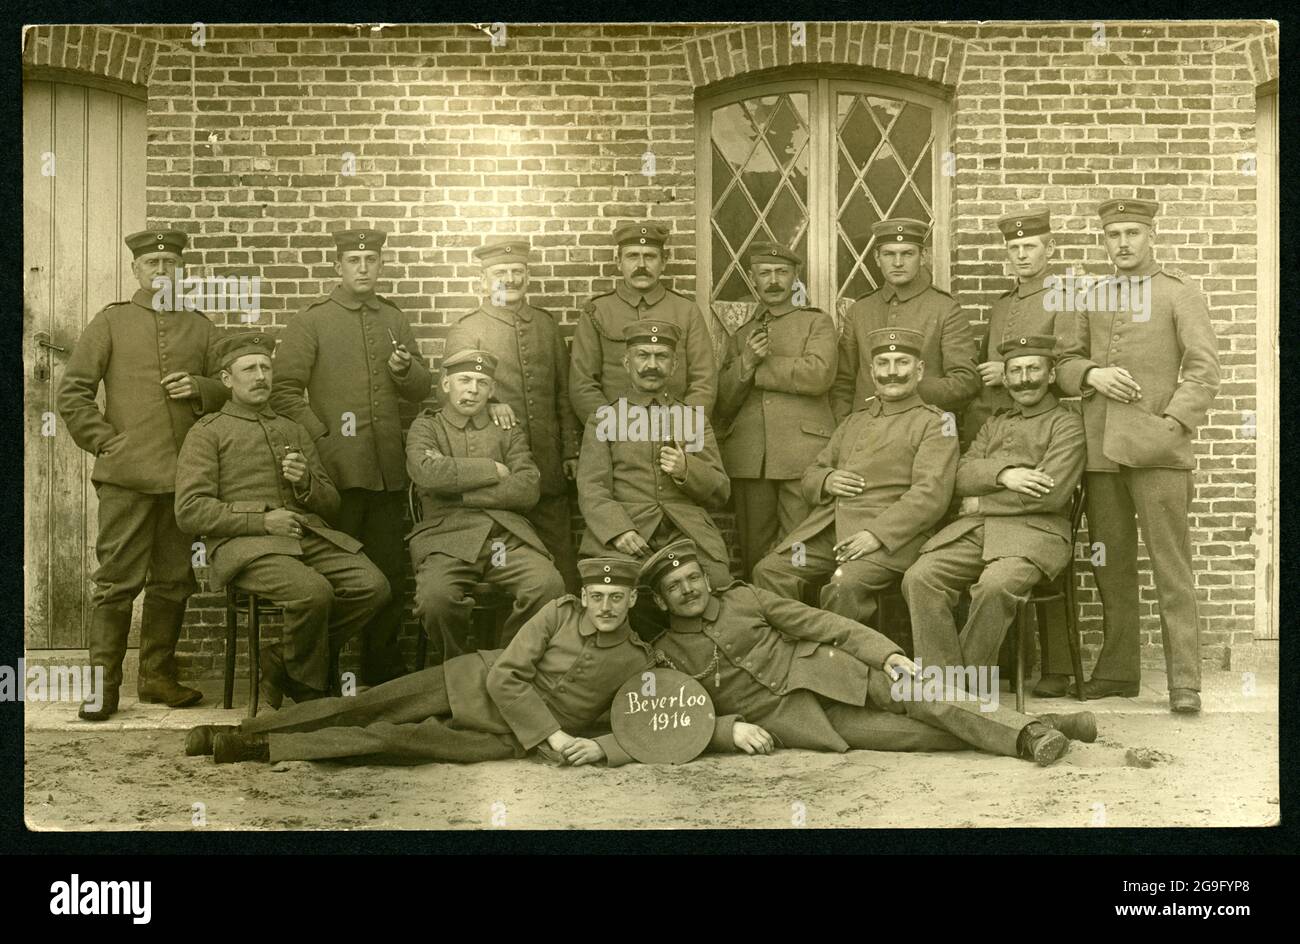 Europa, Alemania, Bélgica, Beverlo, Beverloo, WW I, foto de grupo de soldados alemanes en Bélgica, Beverlo, DERECHOS ADICIONALES-LIQUIDACIÓN-INFO-NO DISPONIBLE Foto de stock